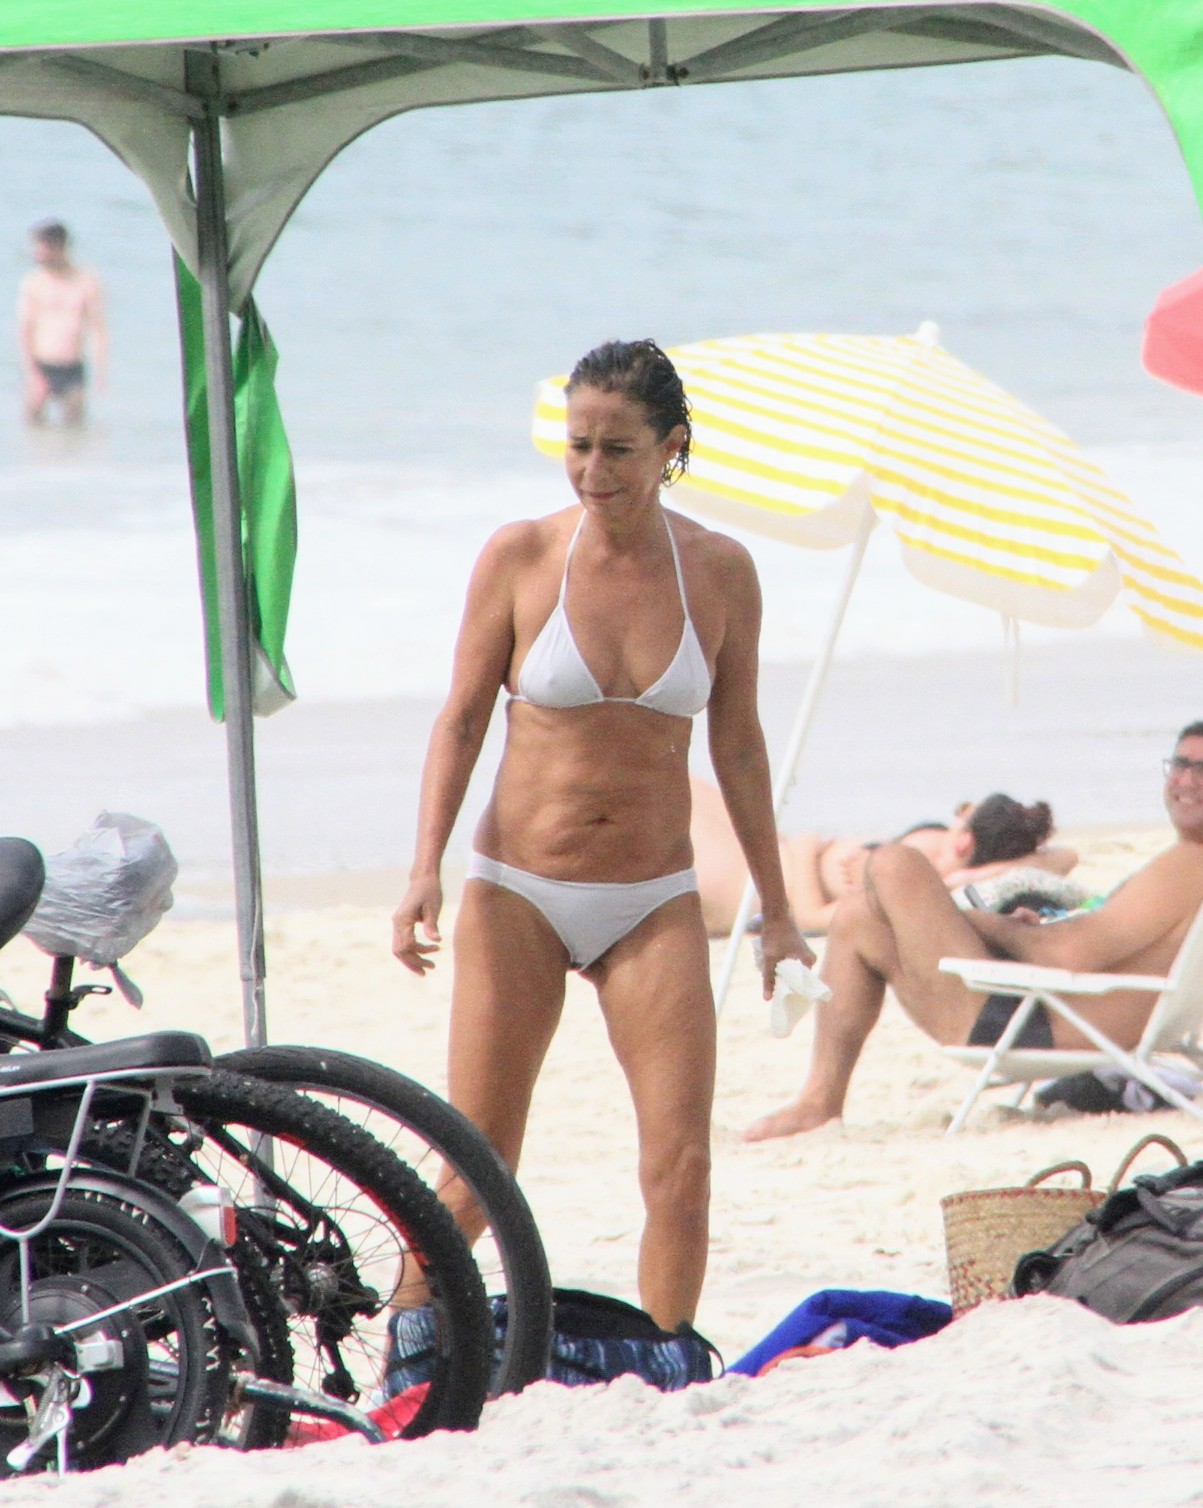 Mulher branca, de cabelo curto, usando um biquíni branco e segurando um pacote branco. Ela se encontra em meio a barracas de praia e, à sua frente, encontram-se bicicletas e bolsas